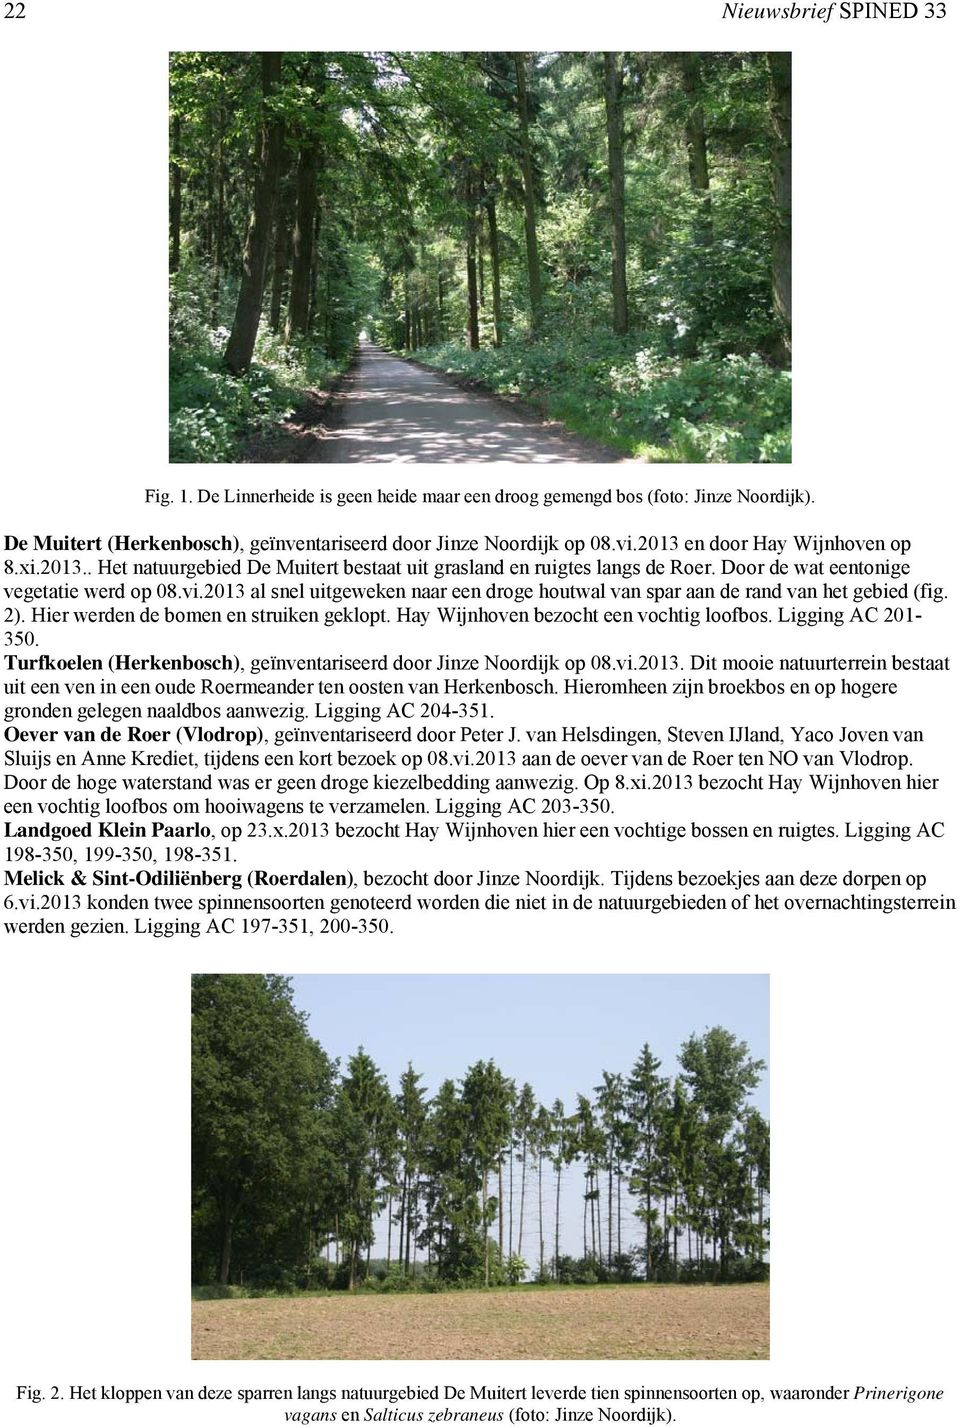 2013 al snel uitgeweken naar een droge houtwal van spar aan de rand van het gebied (fig. 2). Hier werden de bomen en struiken geklopt. Hay Wijnhoven bezocht een vochtig loofbos. Ligging AC 201-350.